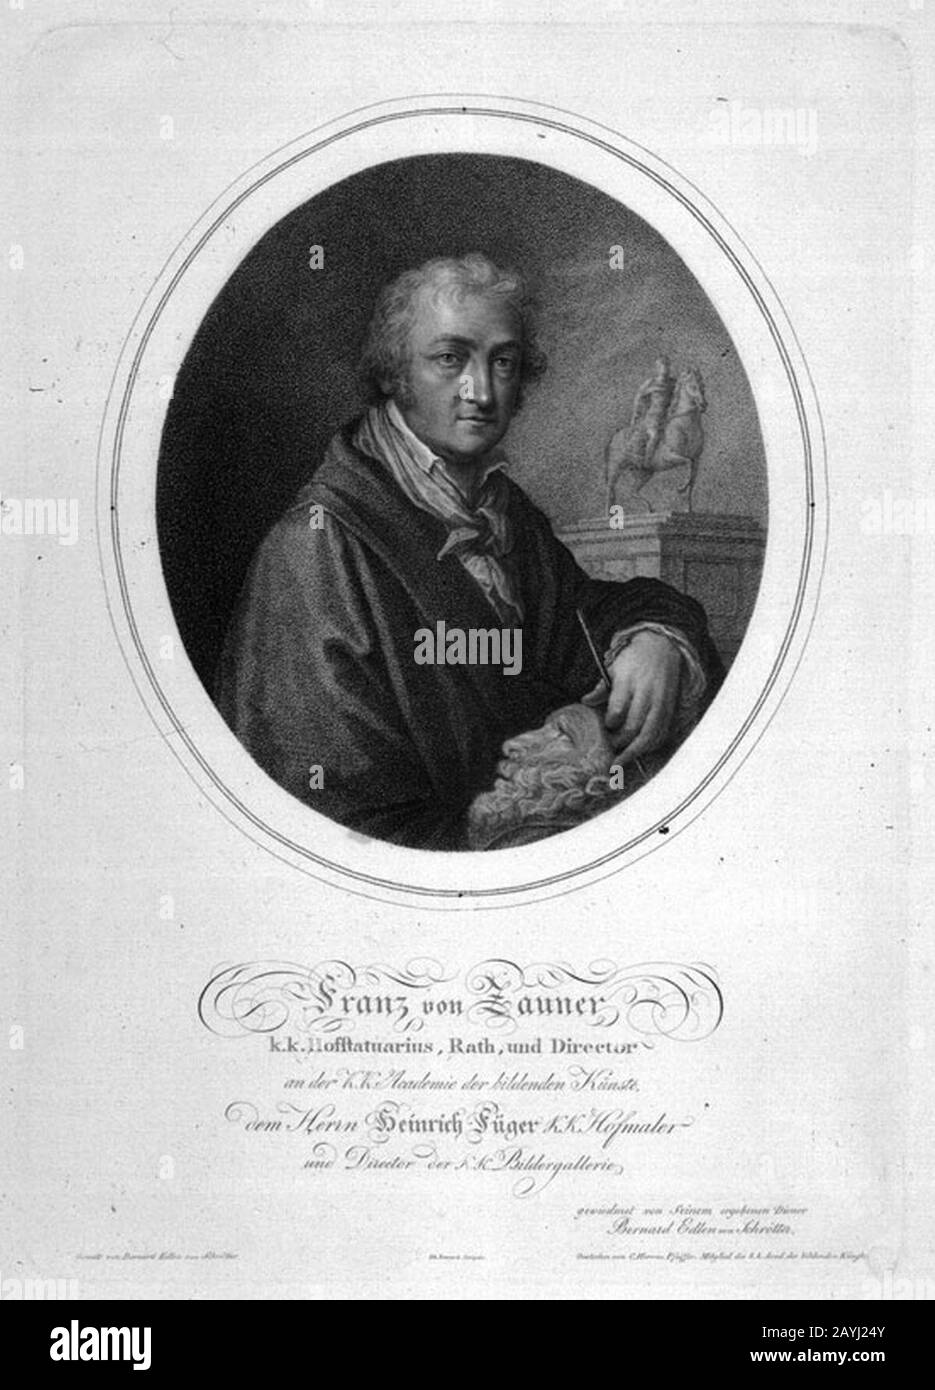 Franz Anton von Zauner - Bildhauer. Stock Photo